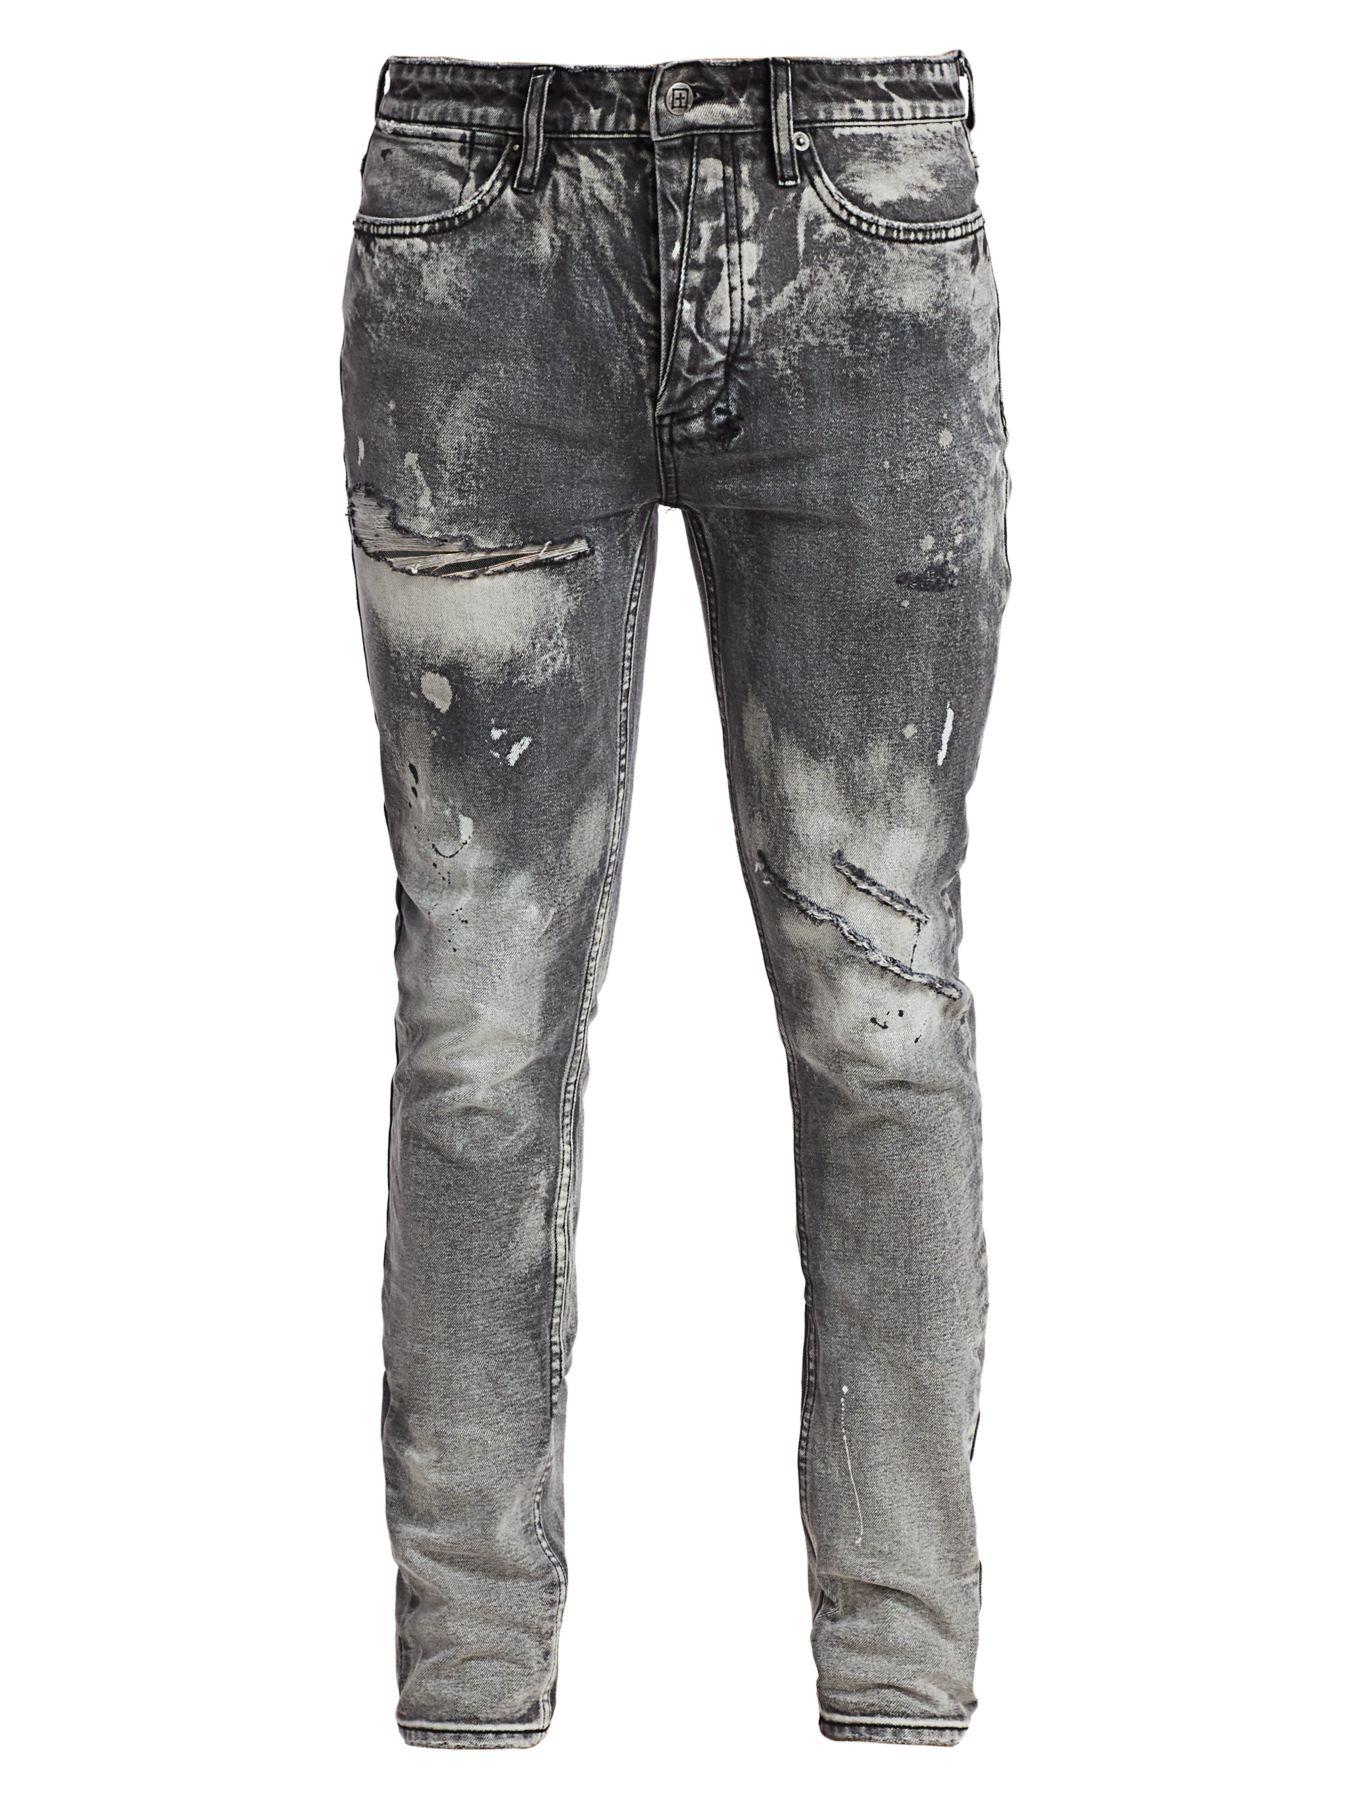 Ksubi Denim Distressed Skinny Jeans in Black for Men - Lyst